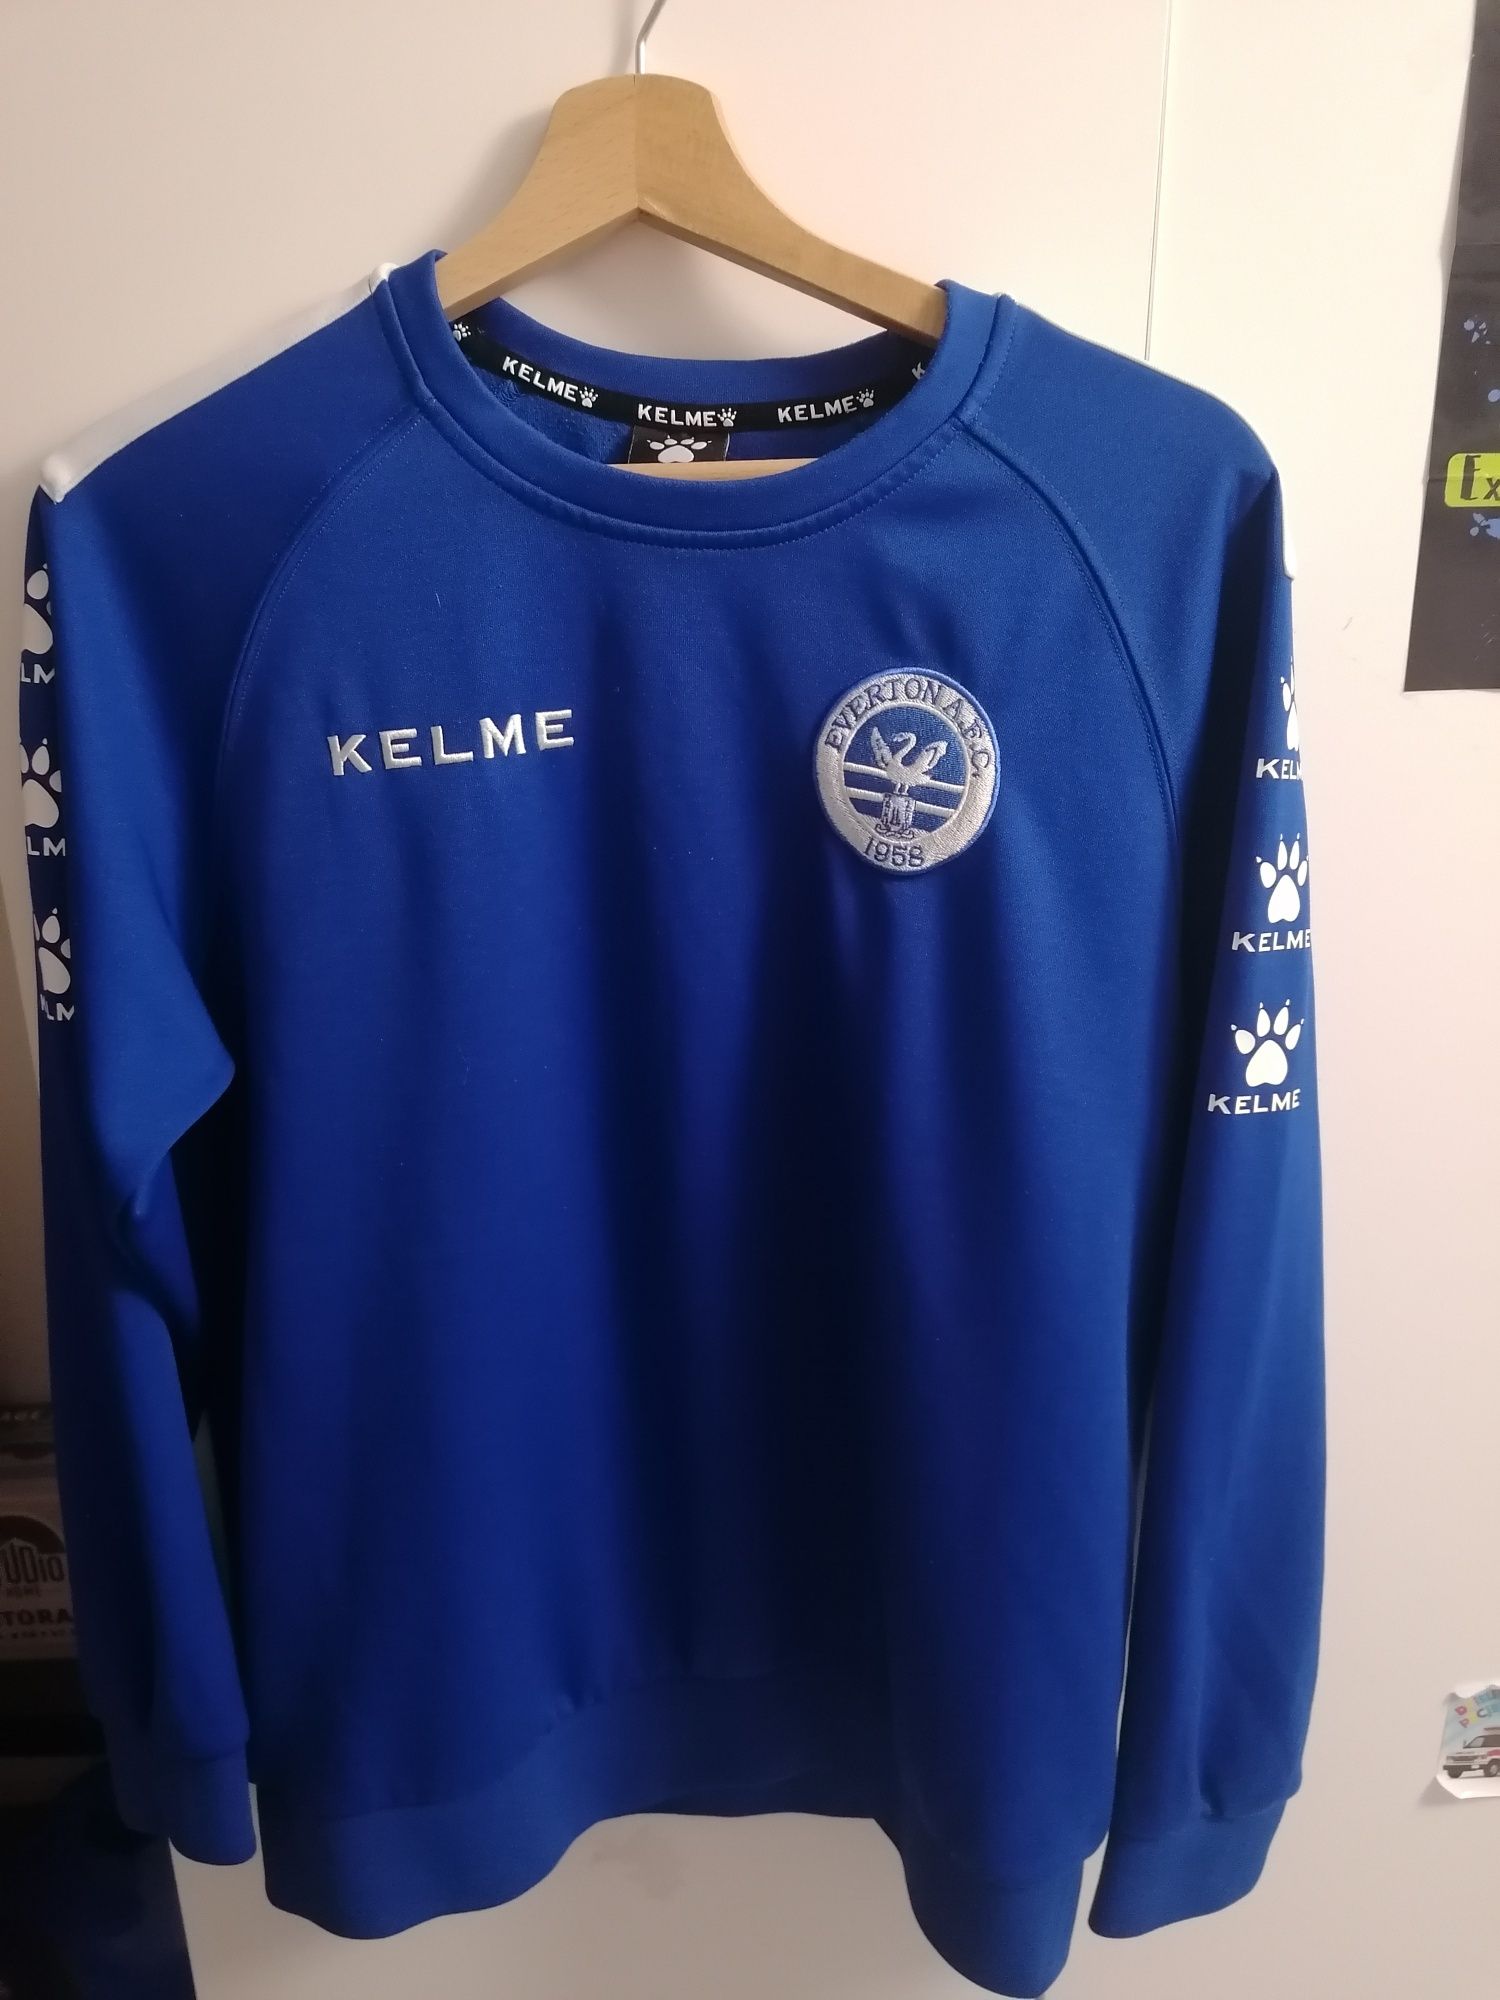 Bluza piłkarska Everton sportowa treningowa rozm M Kelme